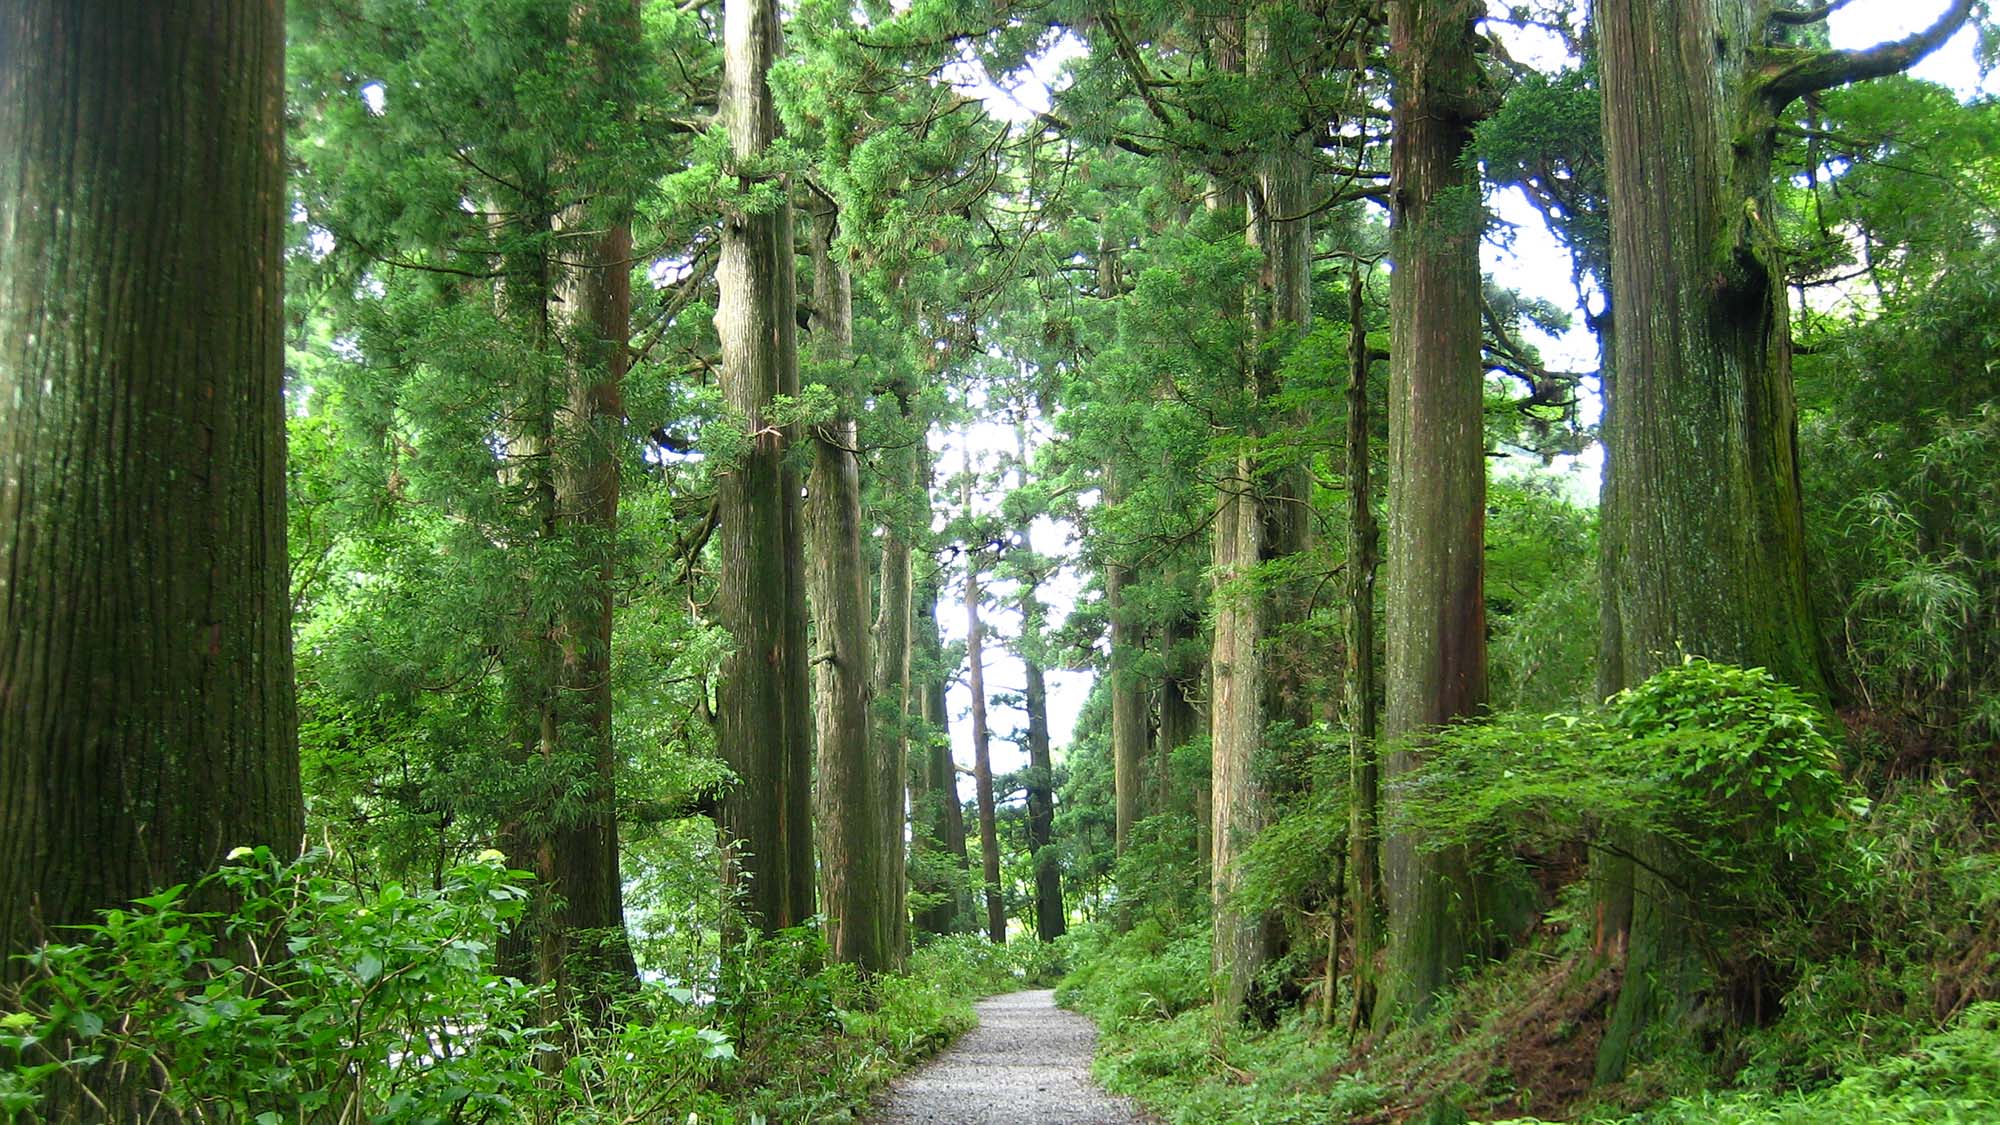 『箱根杉並木』江戸時代初期に植えられたと言われ、樹齢300年余の杉が400本残っています。